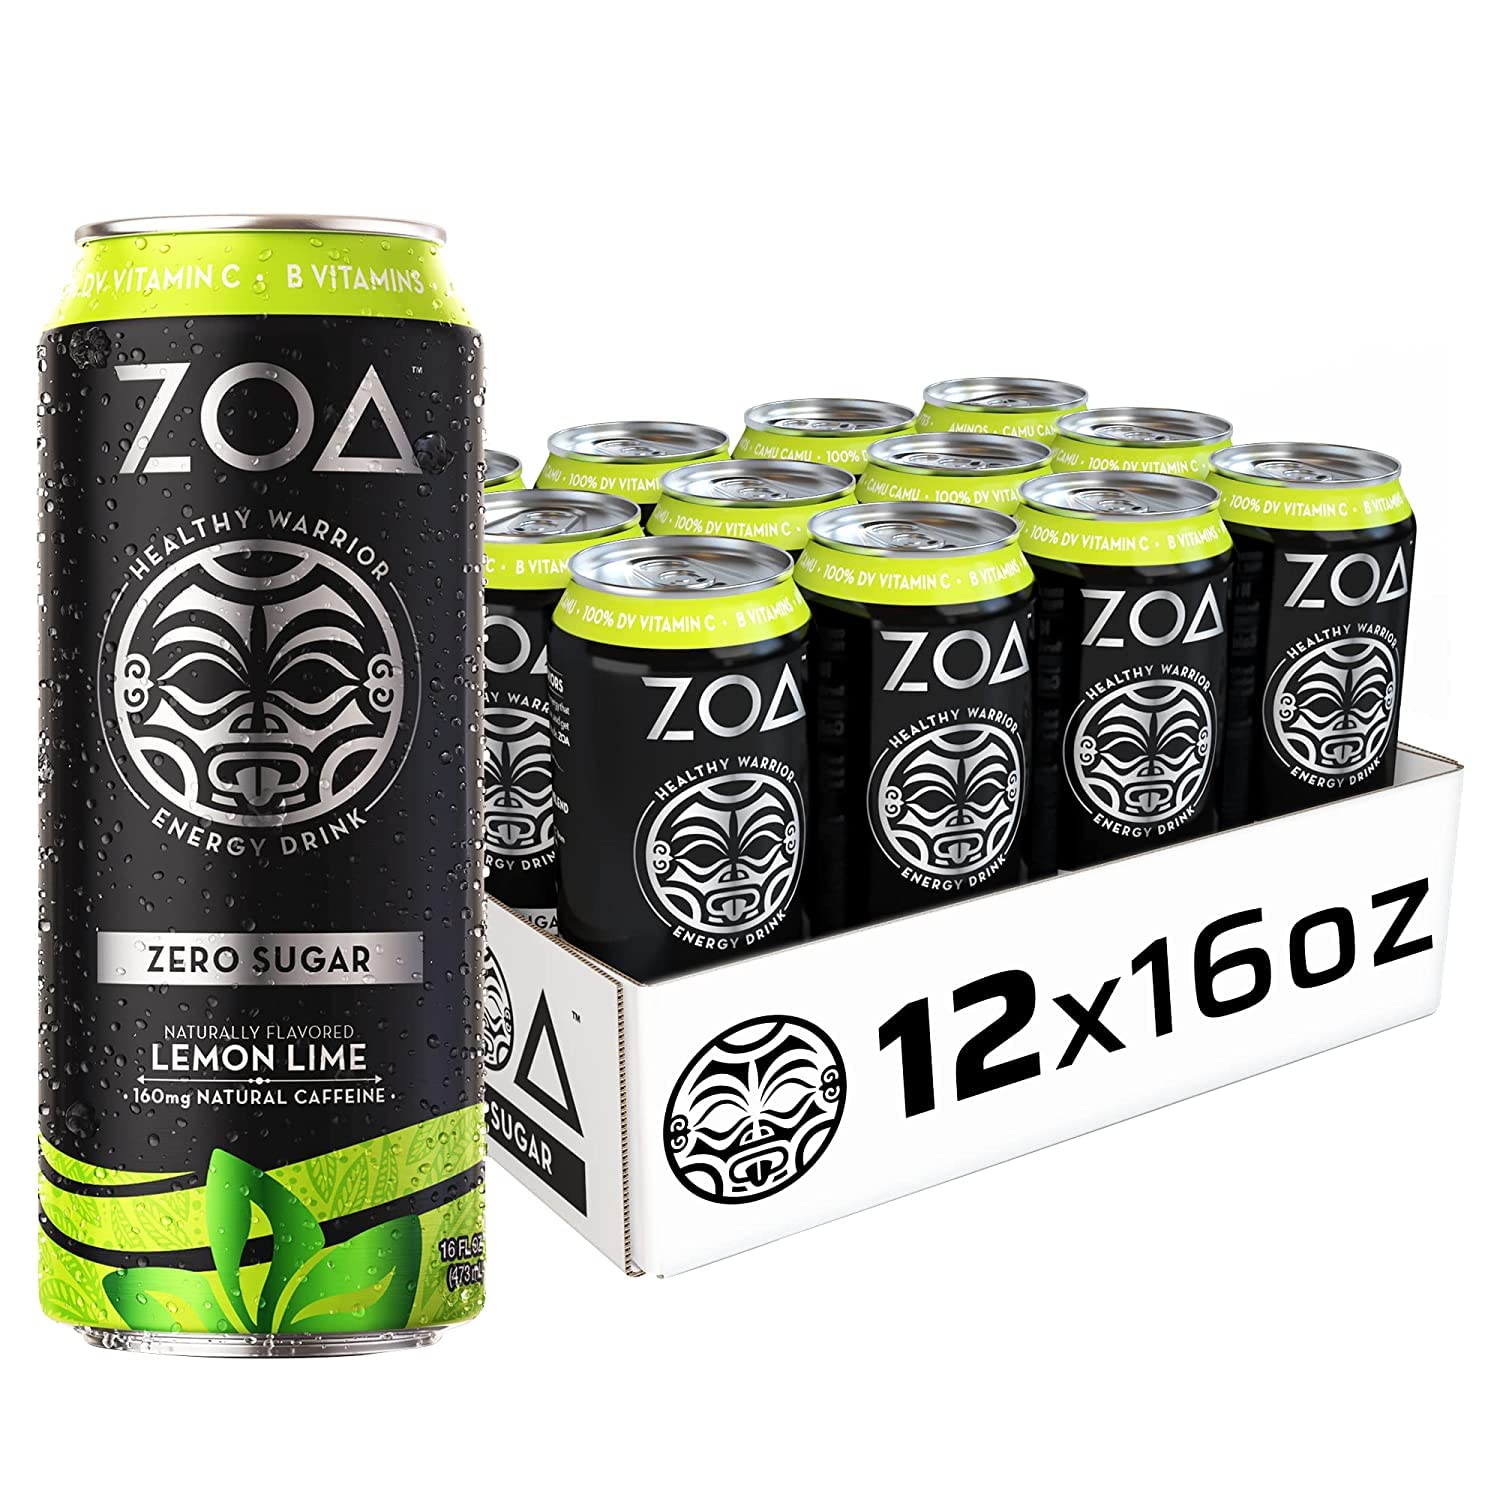 Zoa Zero Sugar Lemon Lime - 12 Pack-0